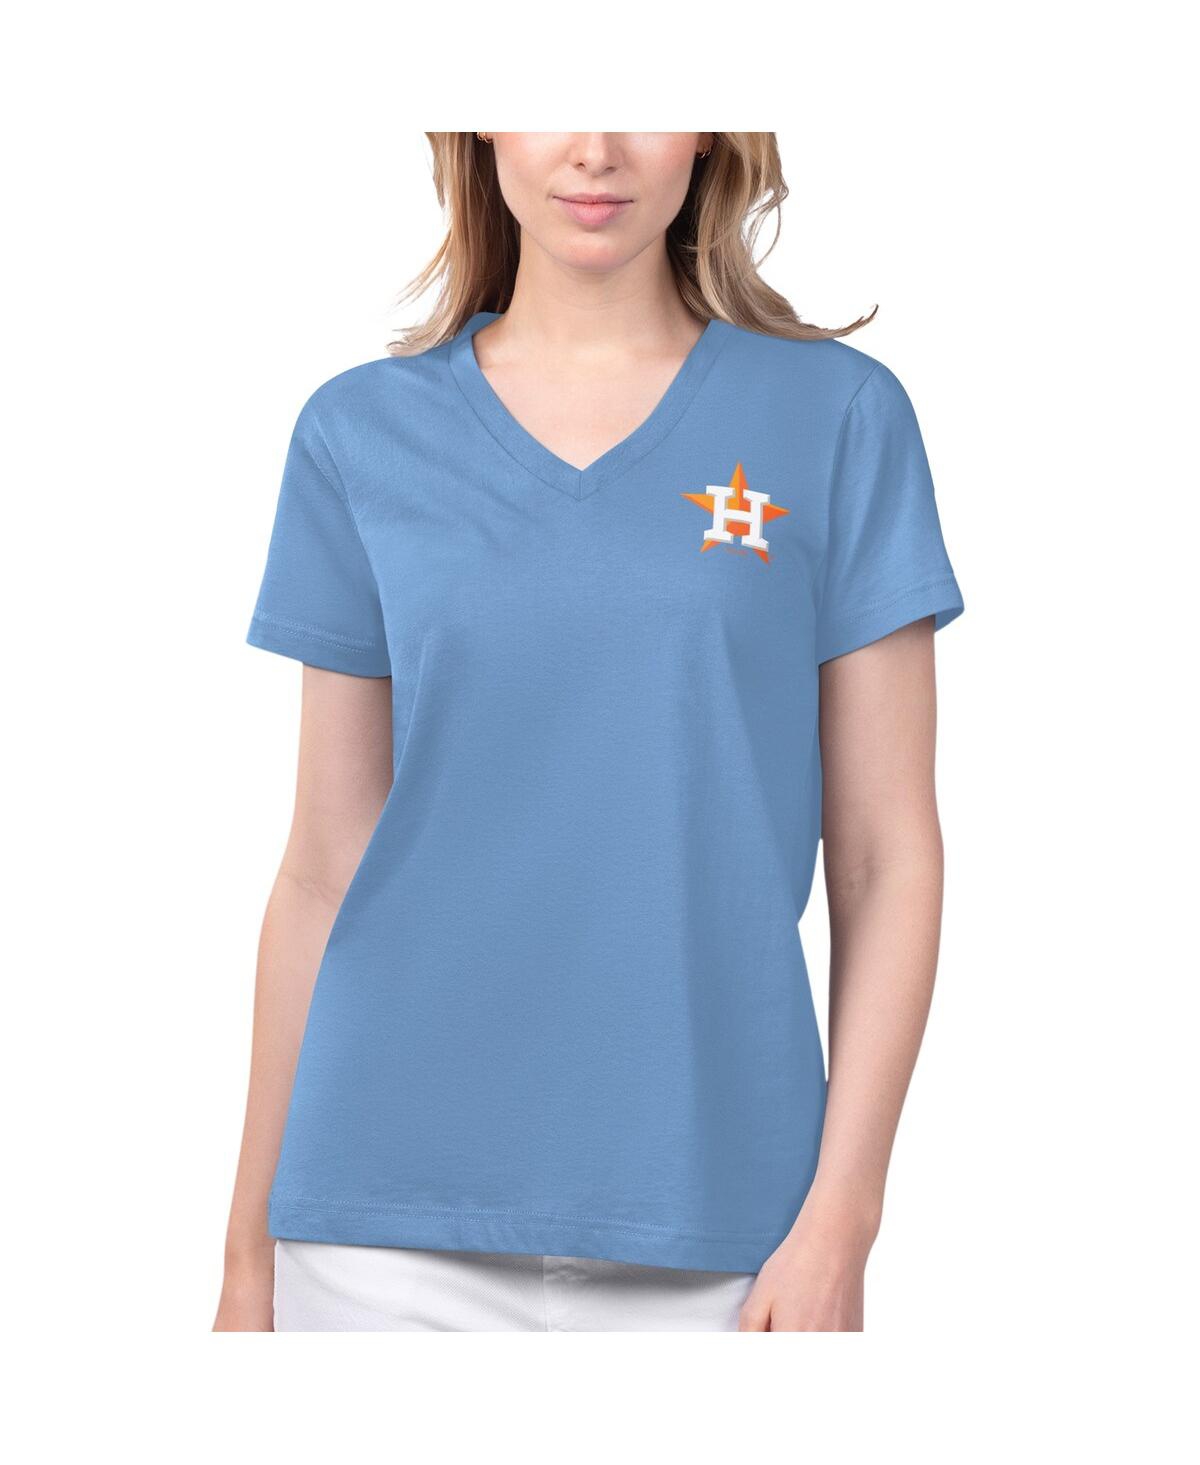 Women's Margaritaville Light Blue Houston Astros Game Time V-Neck T-shirt - Light Blue